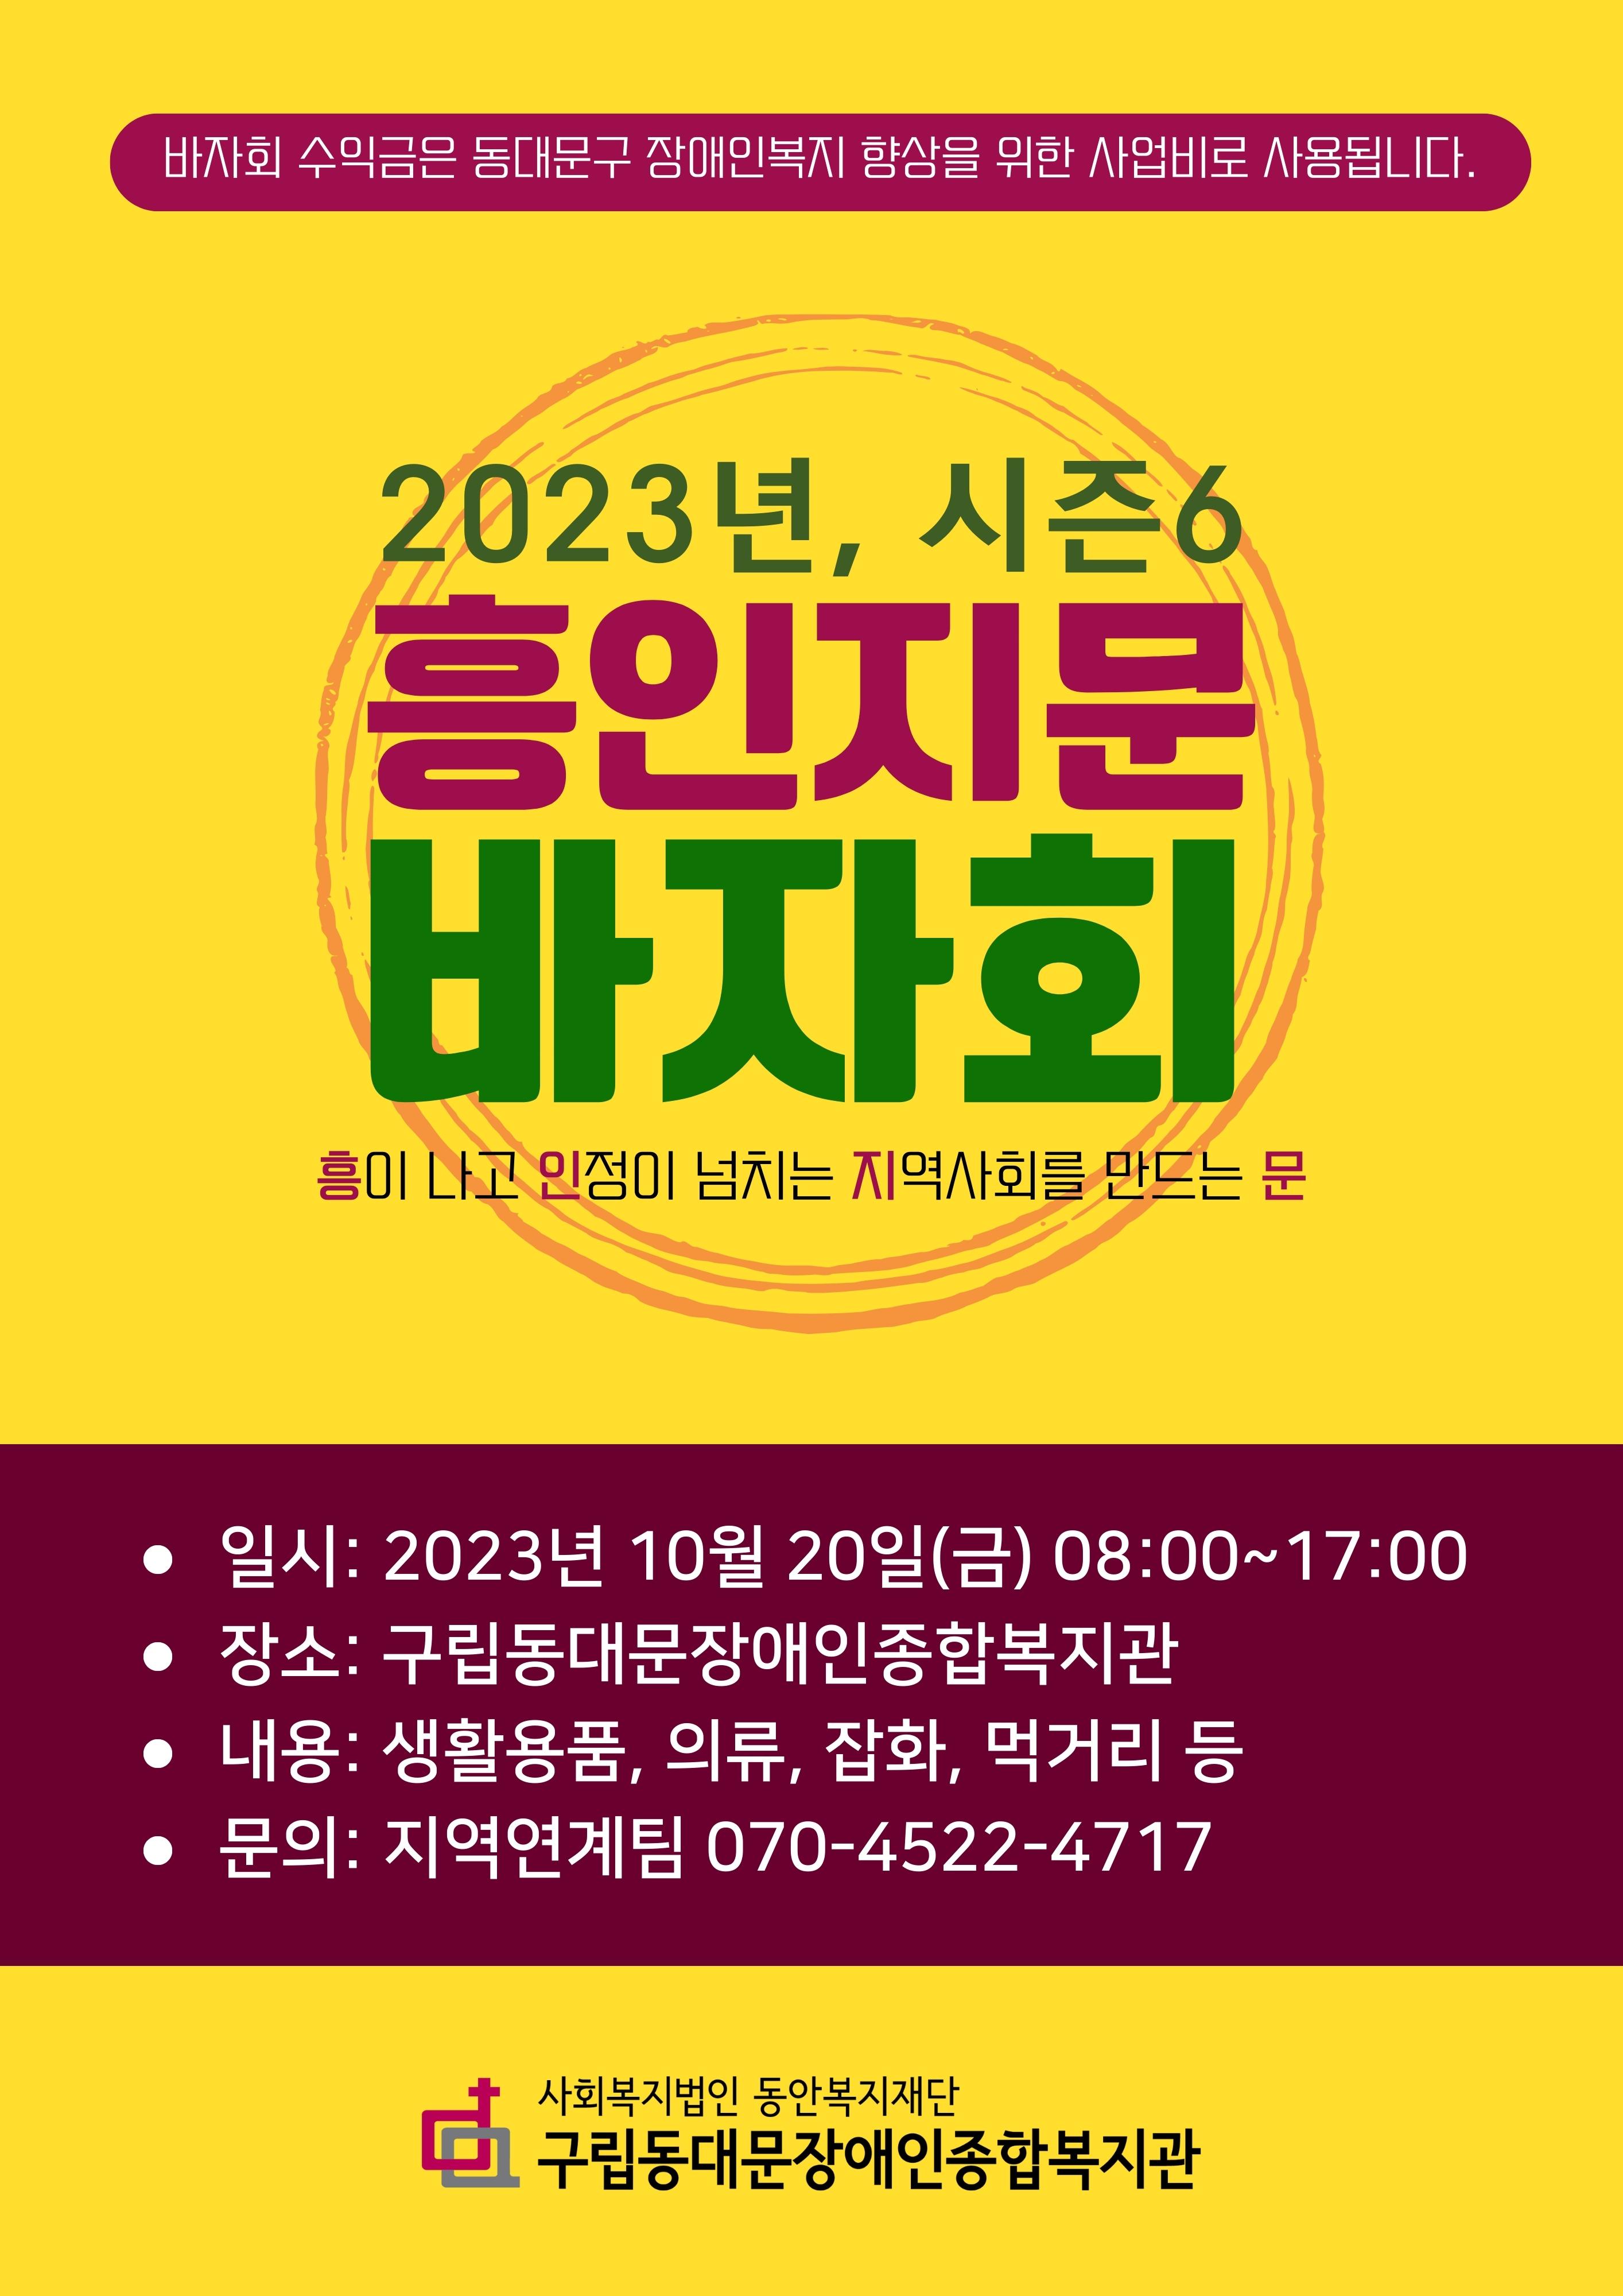 2023년 시즌6 흥인지문 바자회 포스터 자세한 내용 본문에서 확인 가능